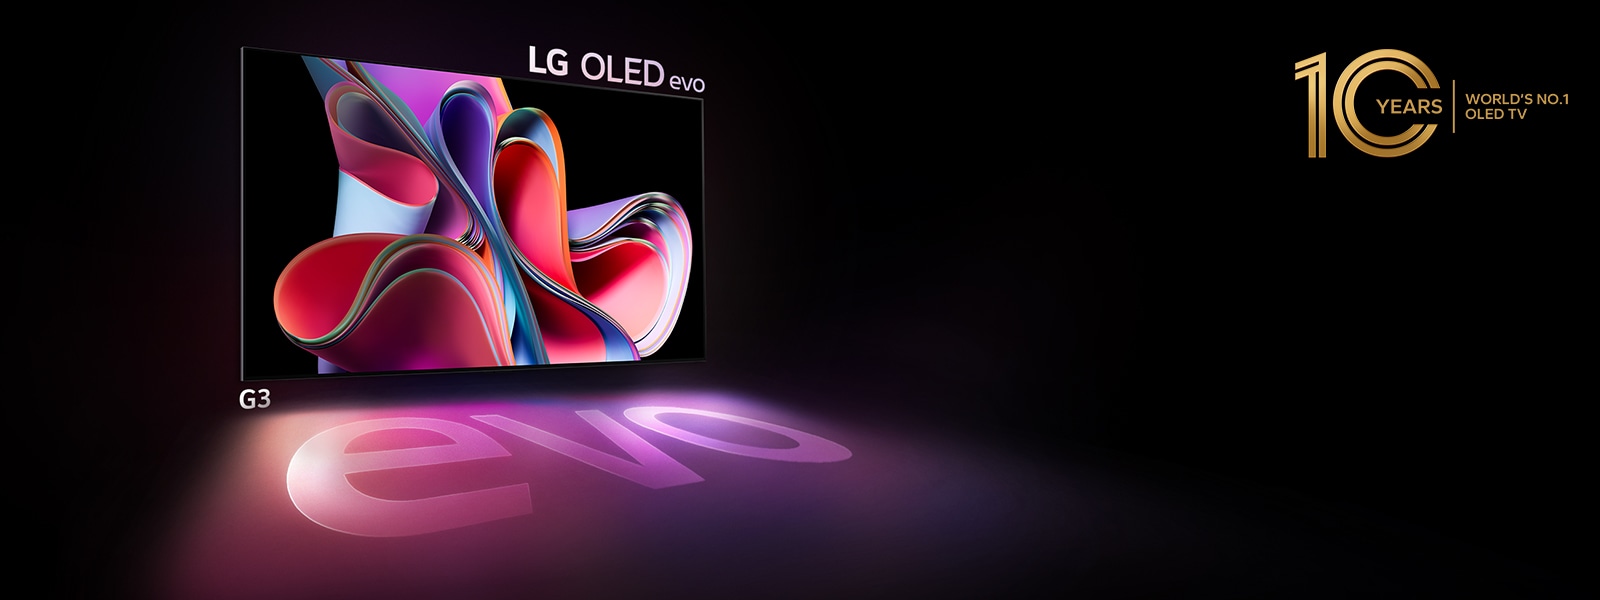 LG OLED G3 evo đang tỏa sáng rực rỡ trong không gian tối. Và ở trên cùng bên phải, có một logo để kỷ niệm 10 năm OLED.